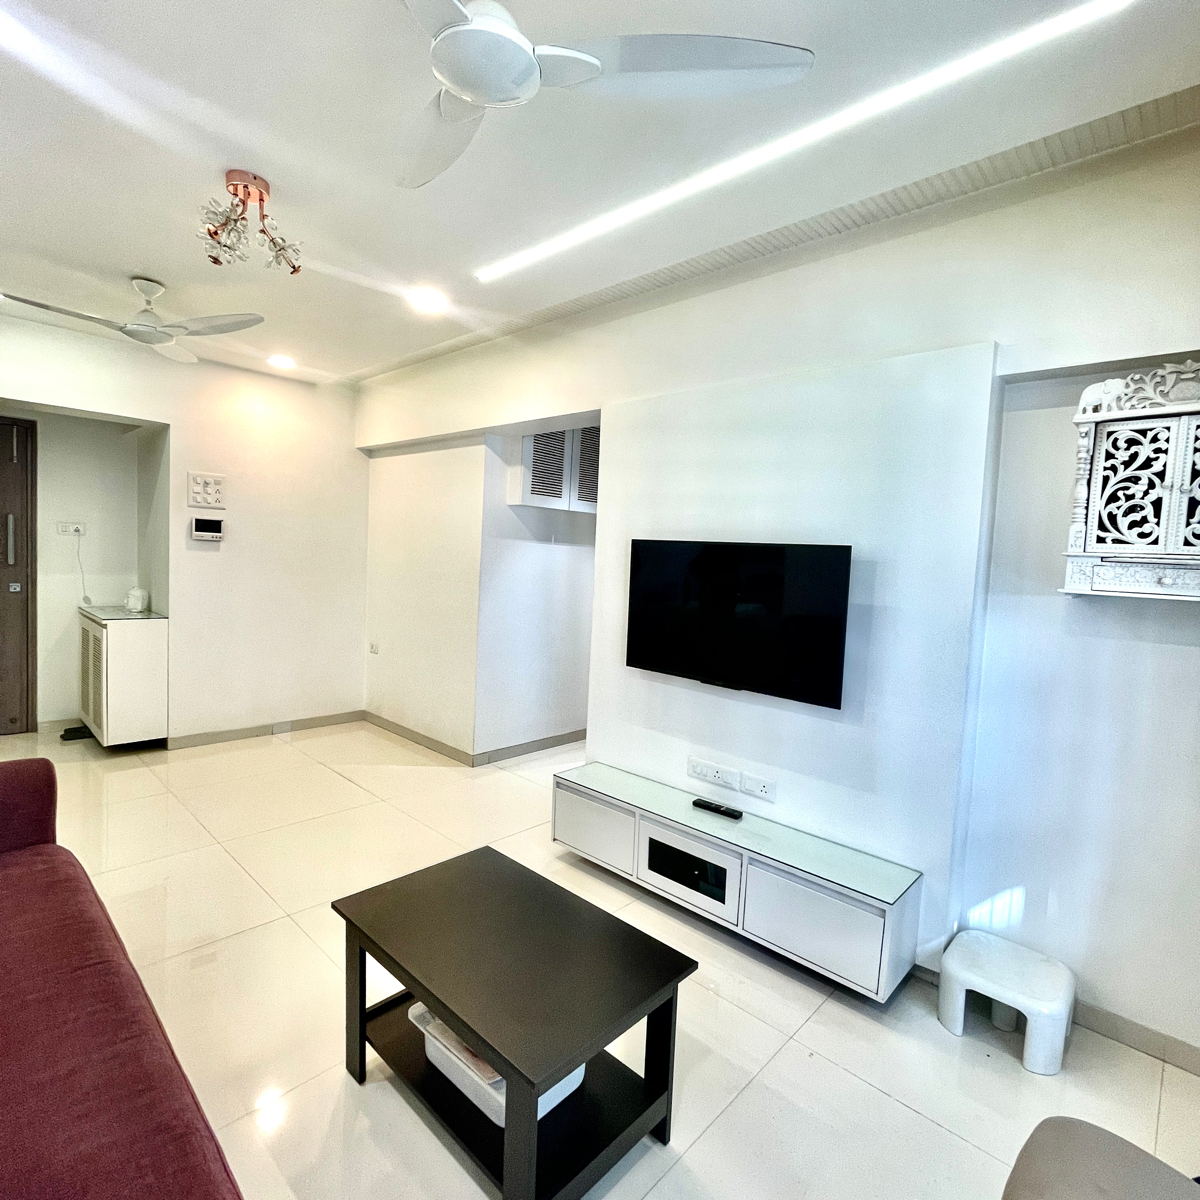 2 BHK Apartment For Resale in Pant Nagar Mumbai 6402203